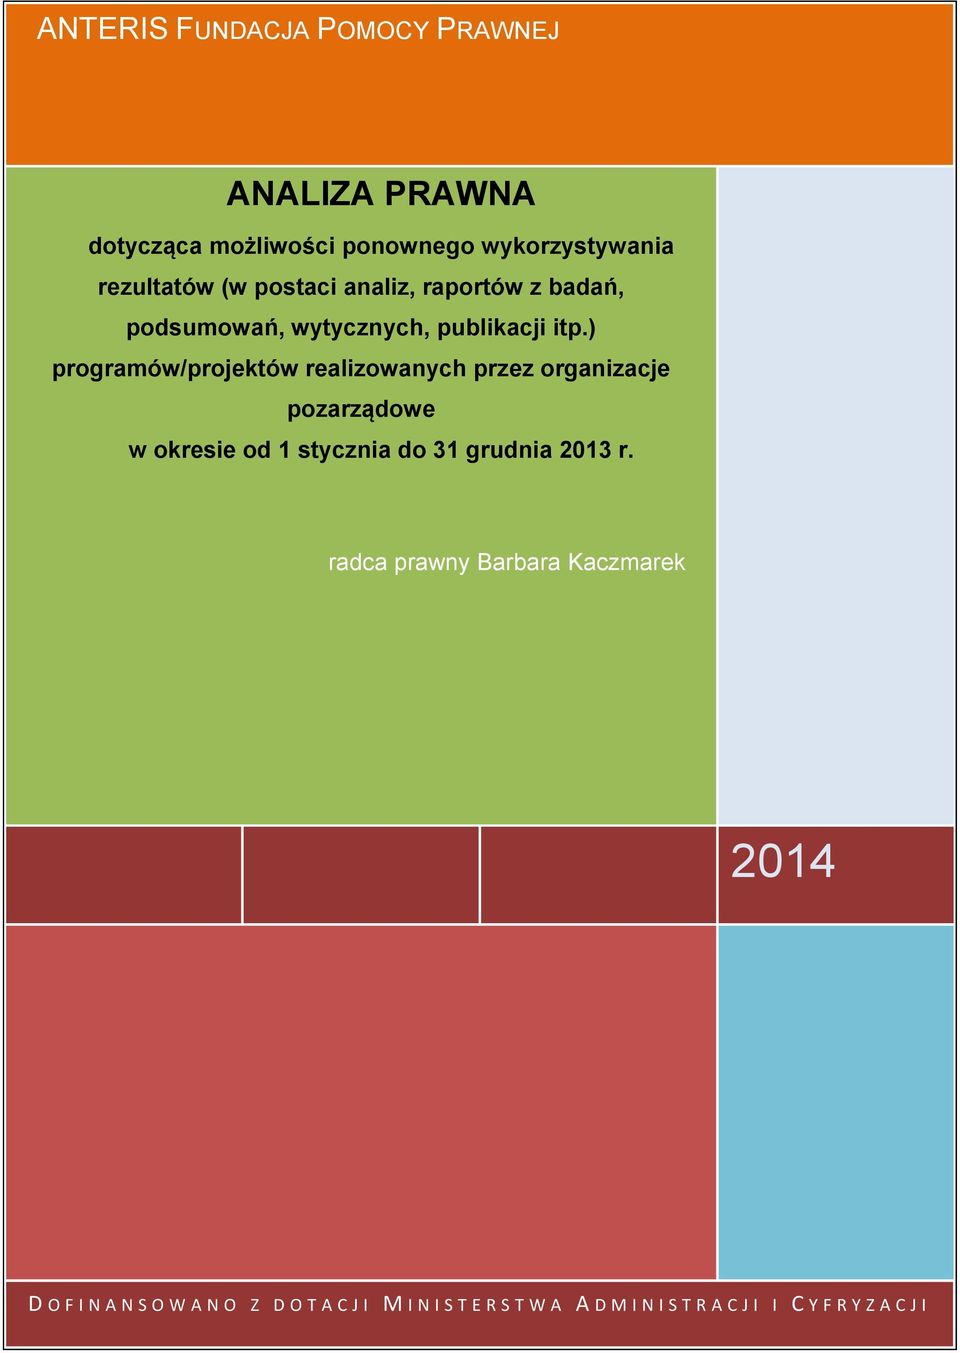 ) programów/projektów realizowanych przez organizacje pozarządowe w okresie od 1 stycznia do 31 grudnia 2013 r.